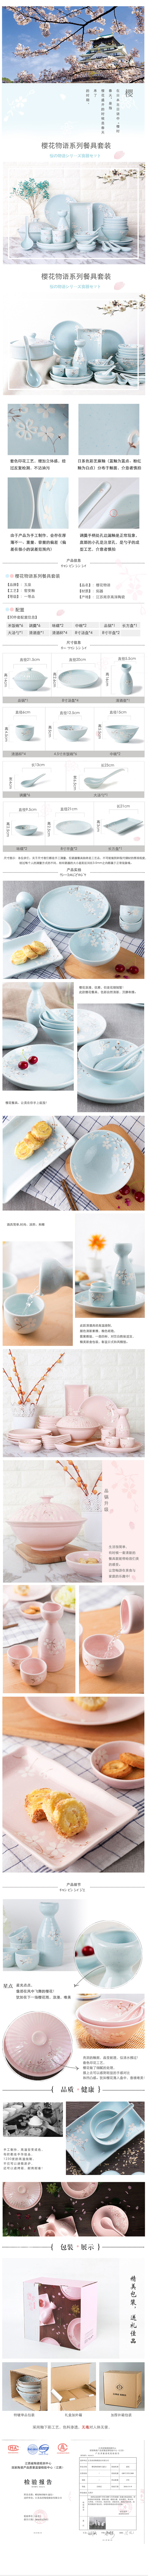 淘宝美工清欢玉泉陶瓷  日式餐具套装  详情页设计作品